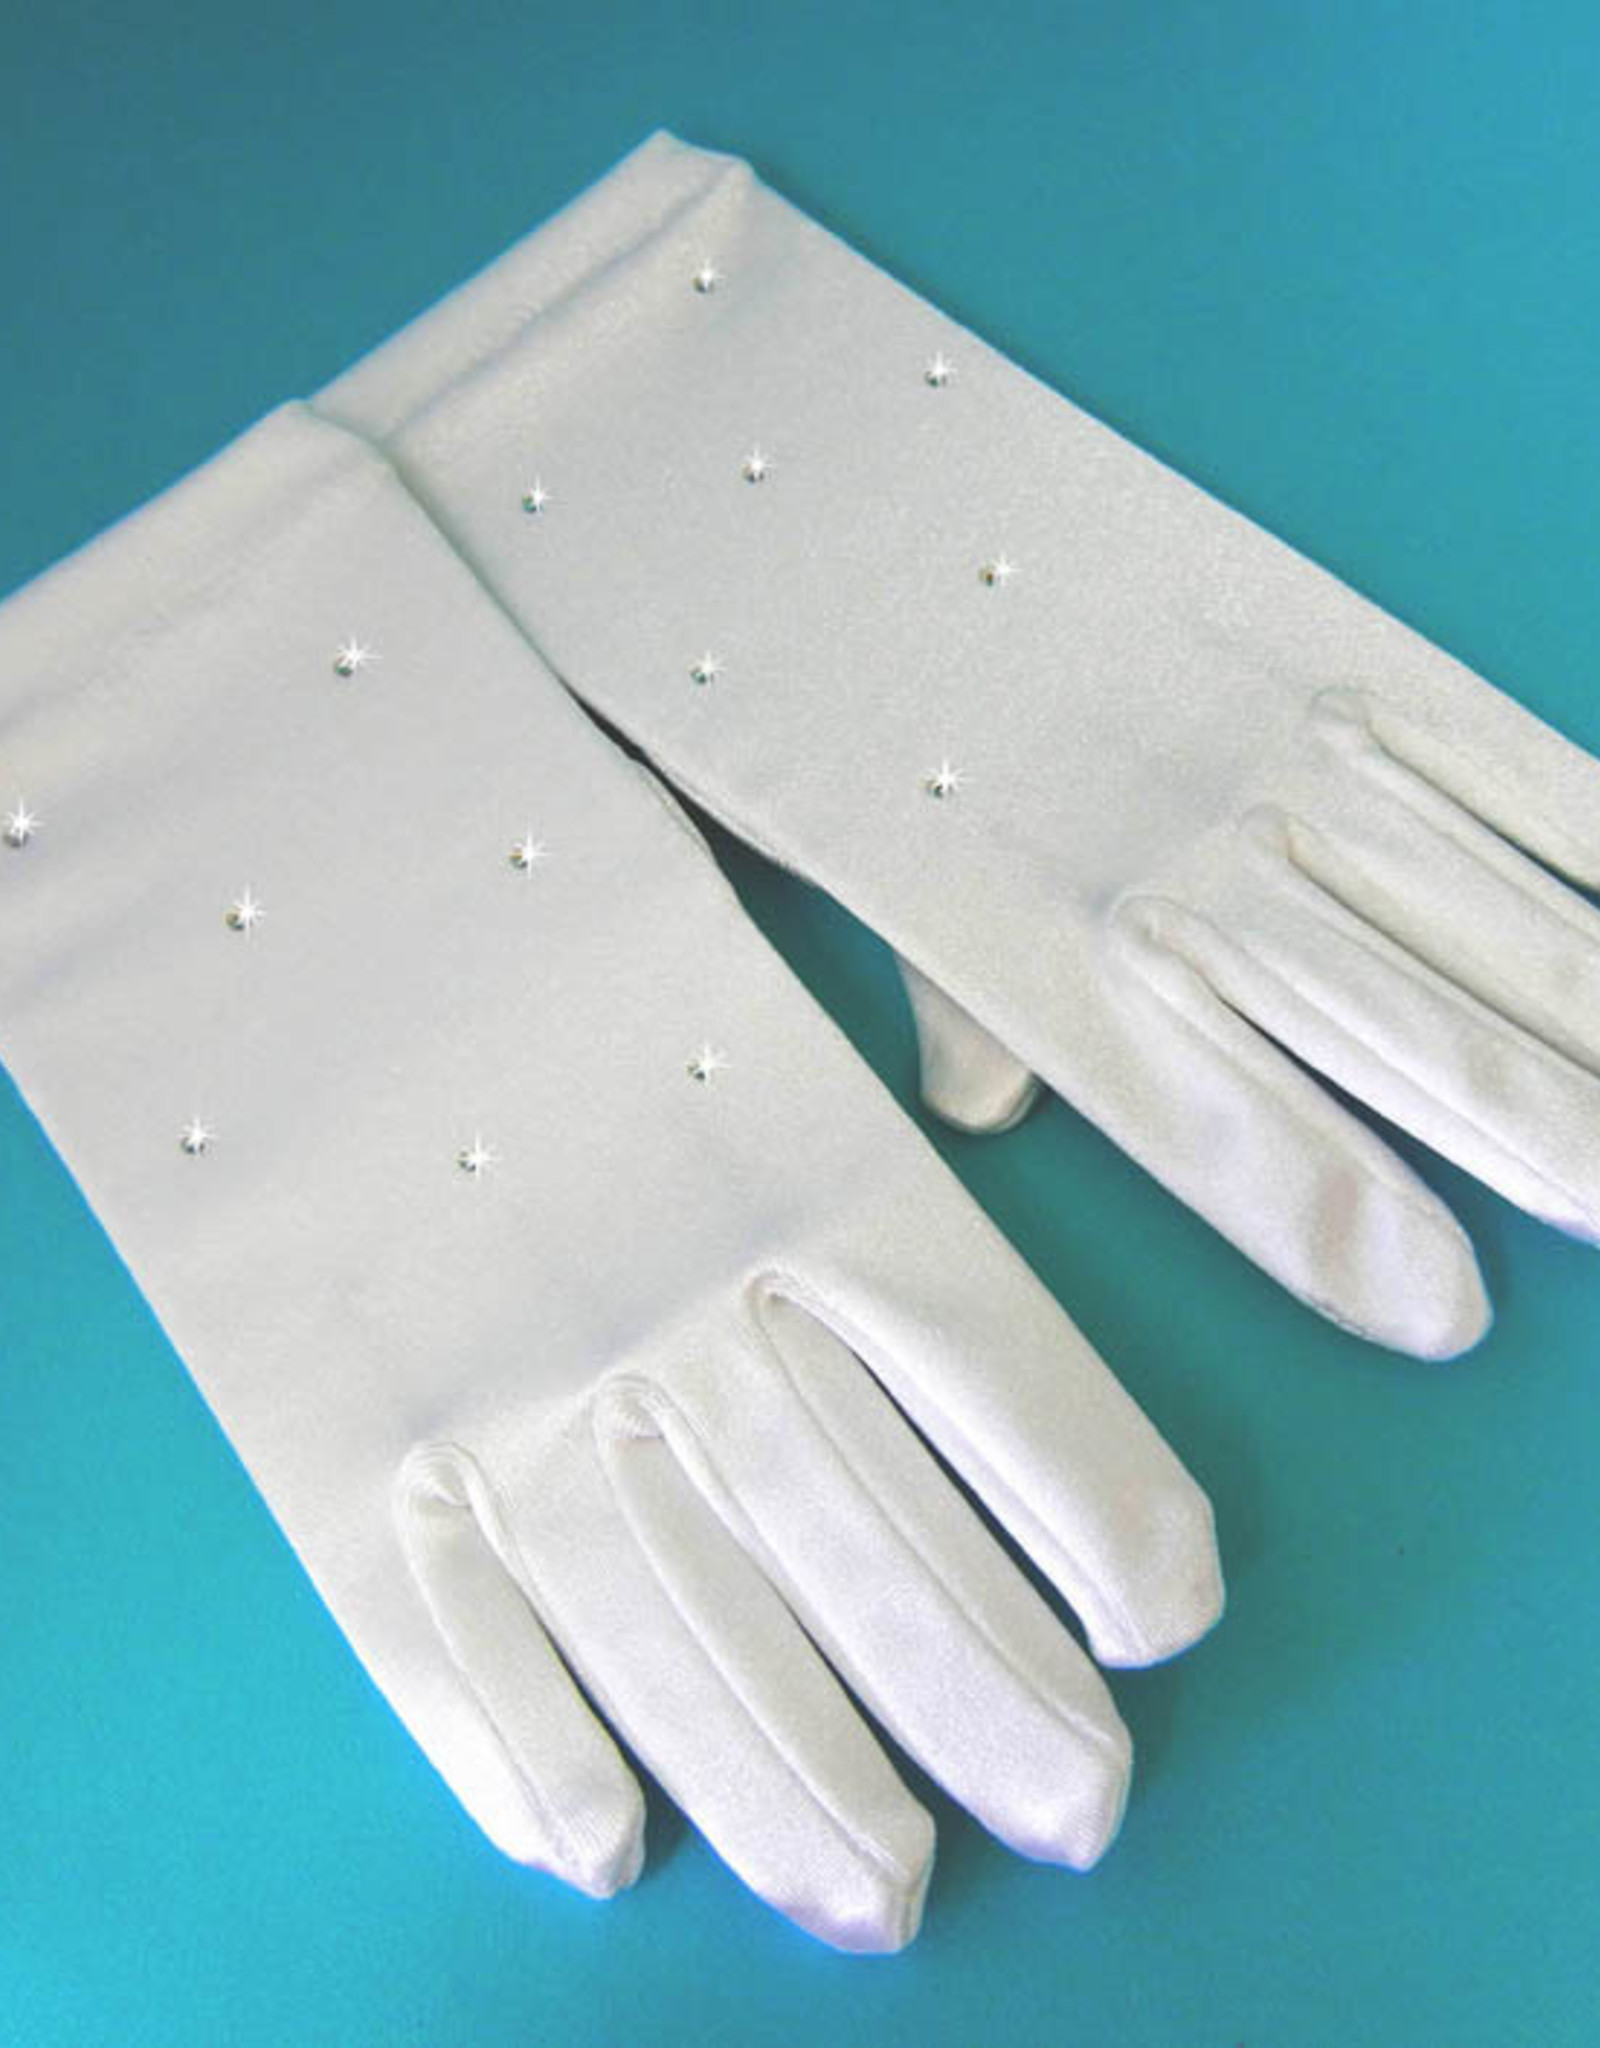 Comm Gloves